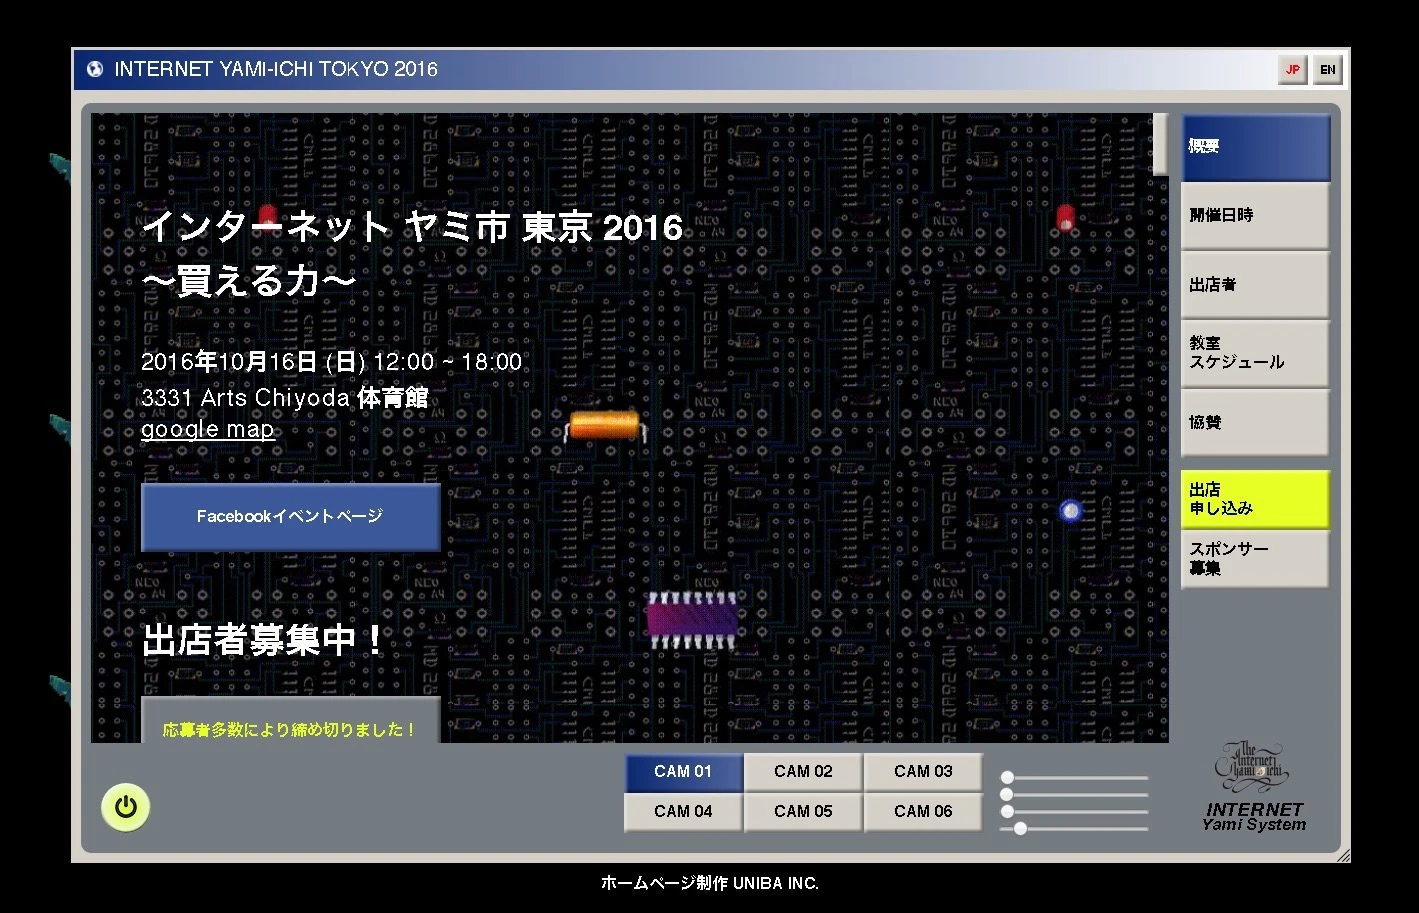 インターネット ヤミ市 東京 2016Webサイトスクリーンショット